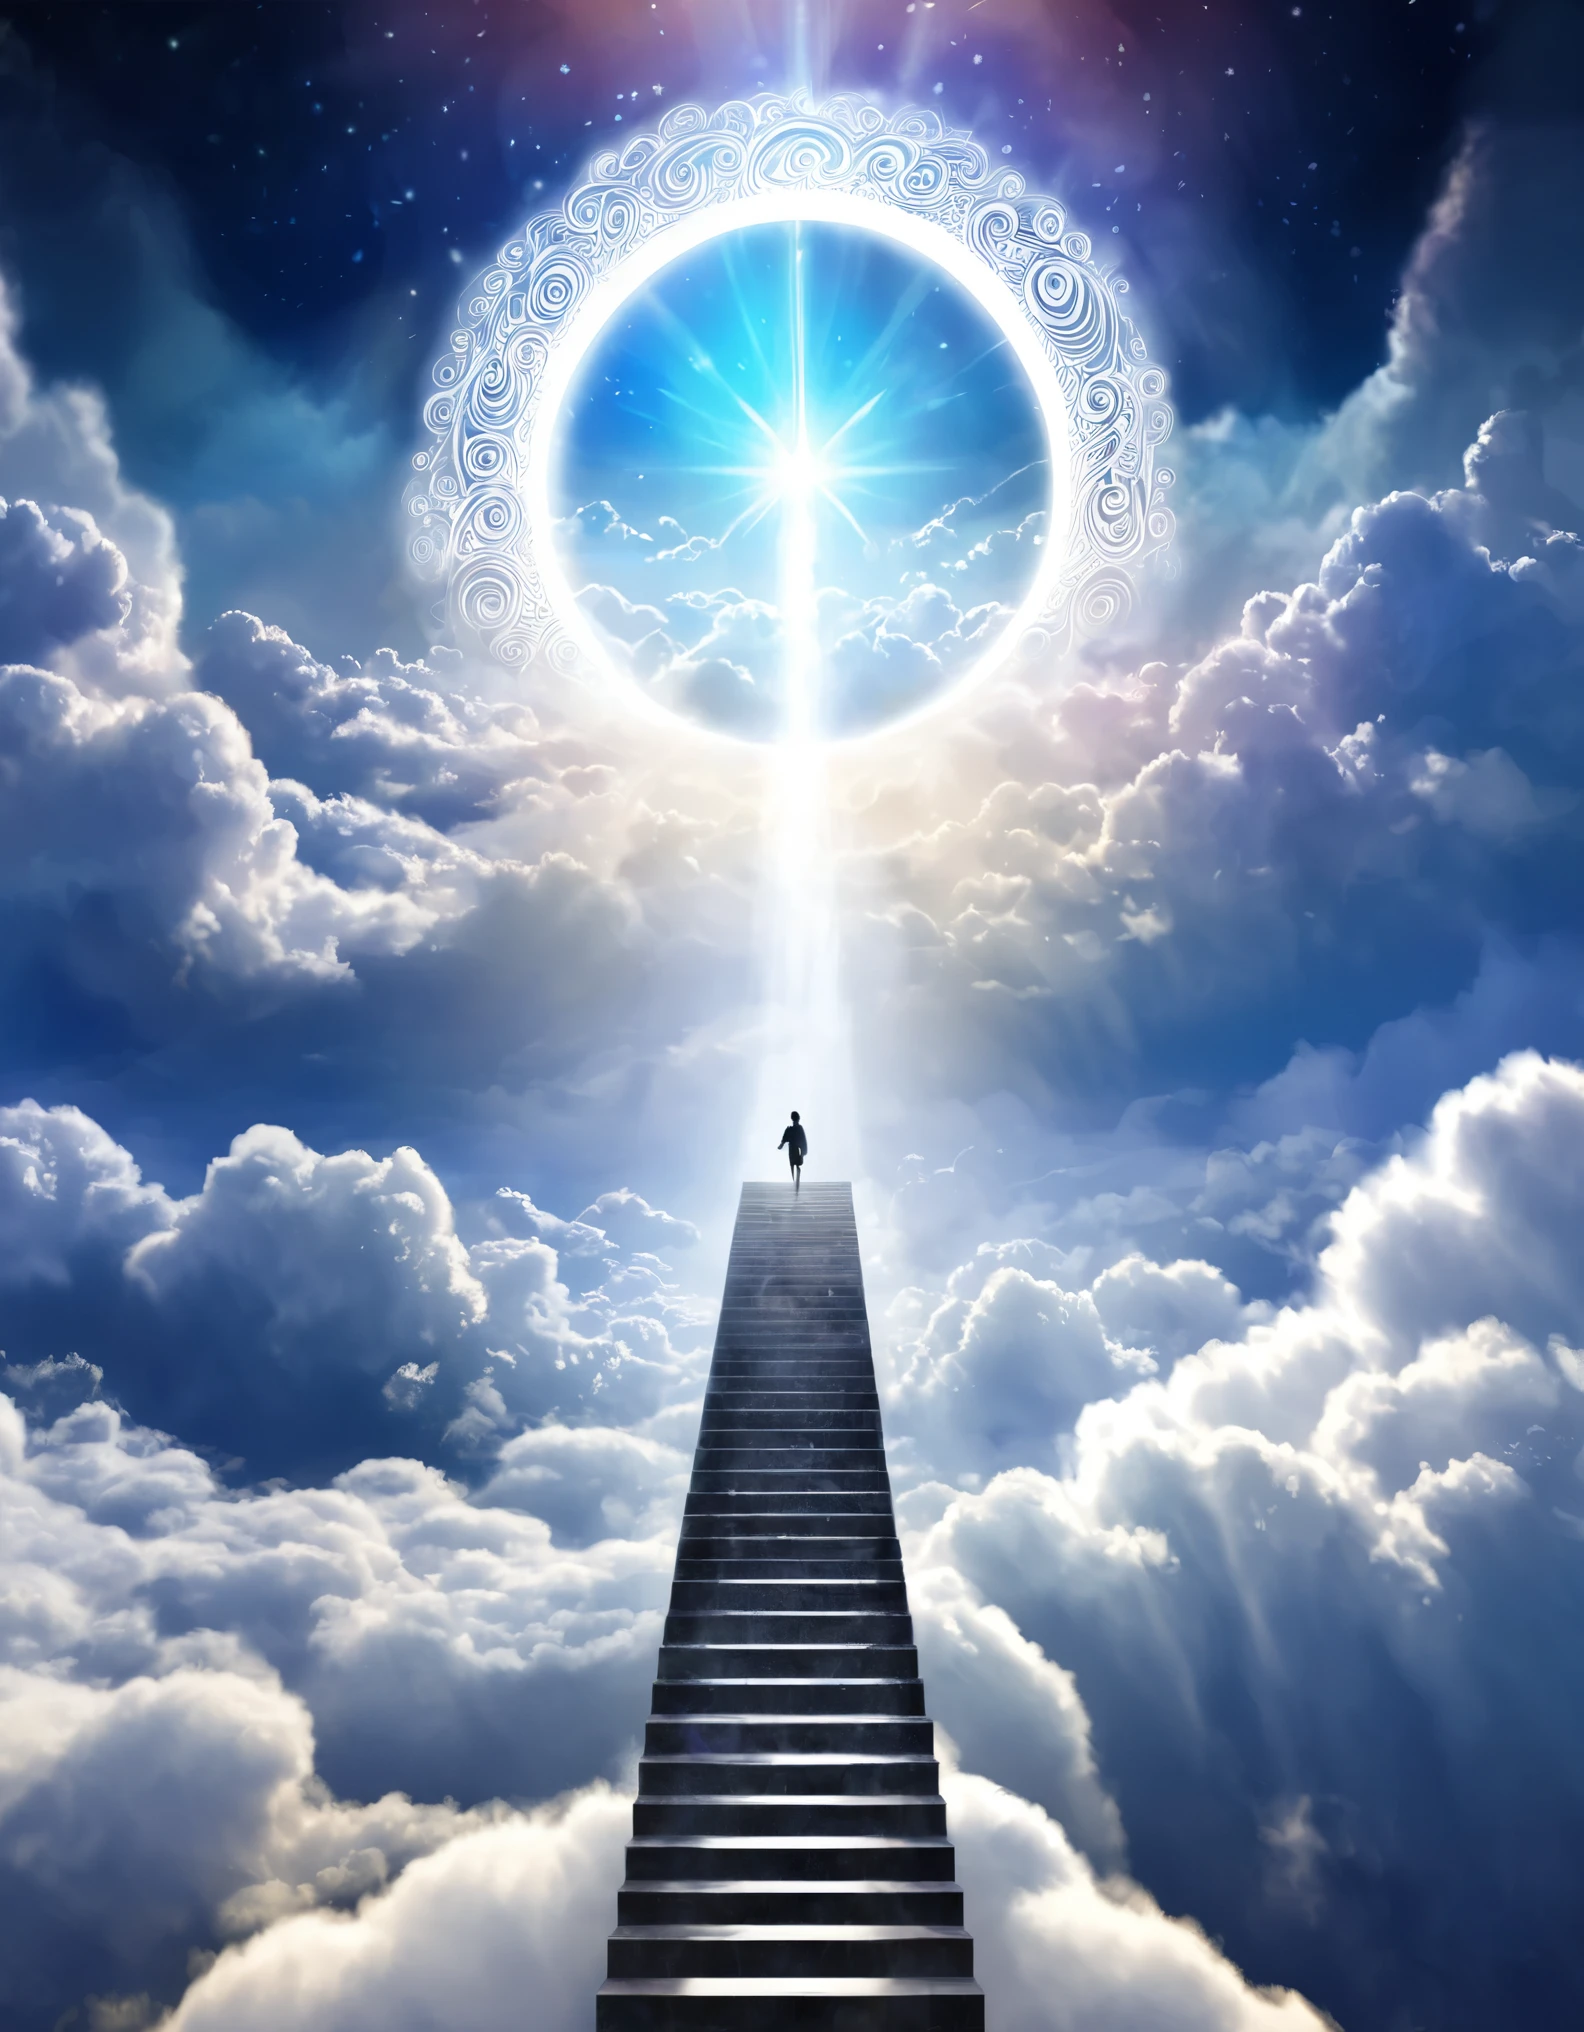 Digitale Illustration einer Figur, die eine Wolkentreppe hinauf zu einem leuchtenden Himmelsportal steigt, repräsentiert die Reise in höhere Sphären am Himmelfahrtstag，Hügel